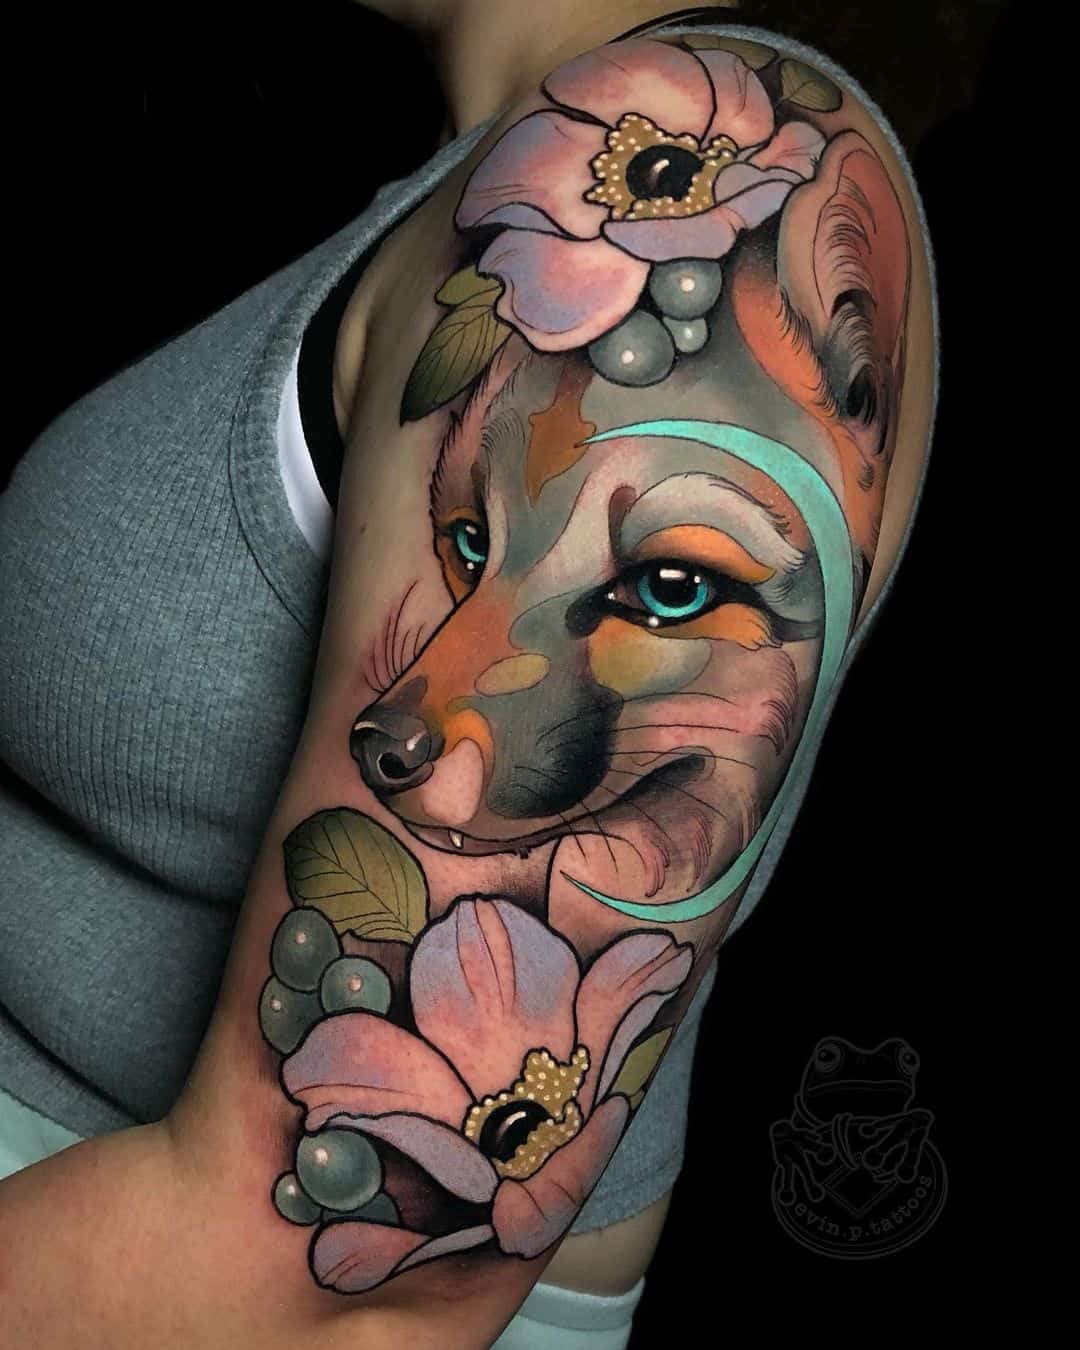 Fox Tattoo Design